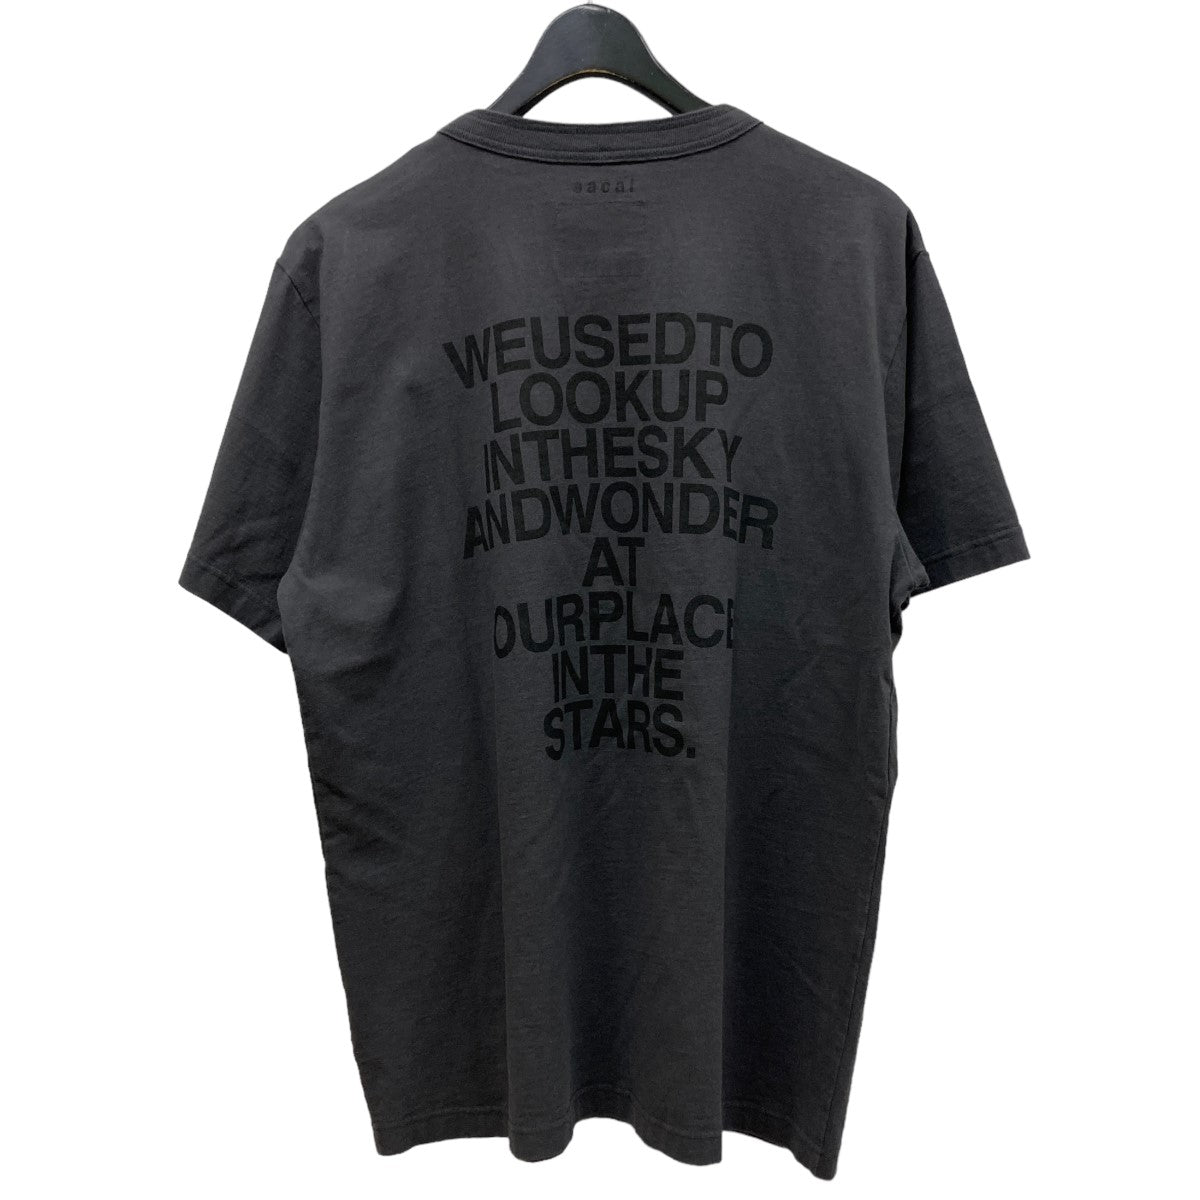 sacai(サカイ) 23AW 「Graphic T-Shirt」 バックプリントTシャツ 23 